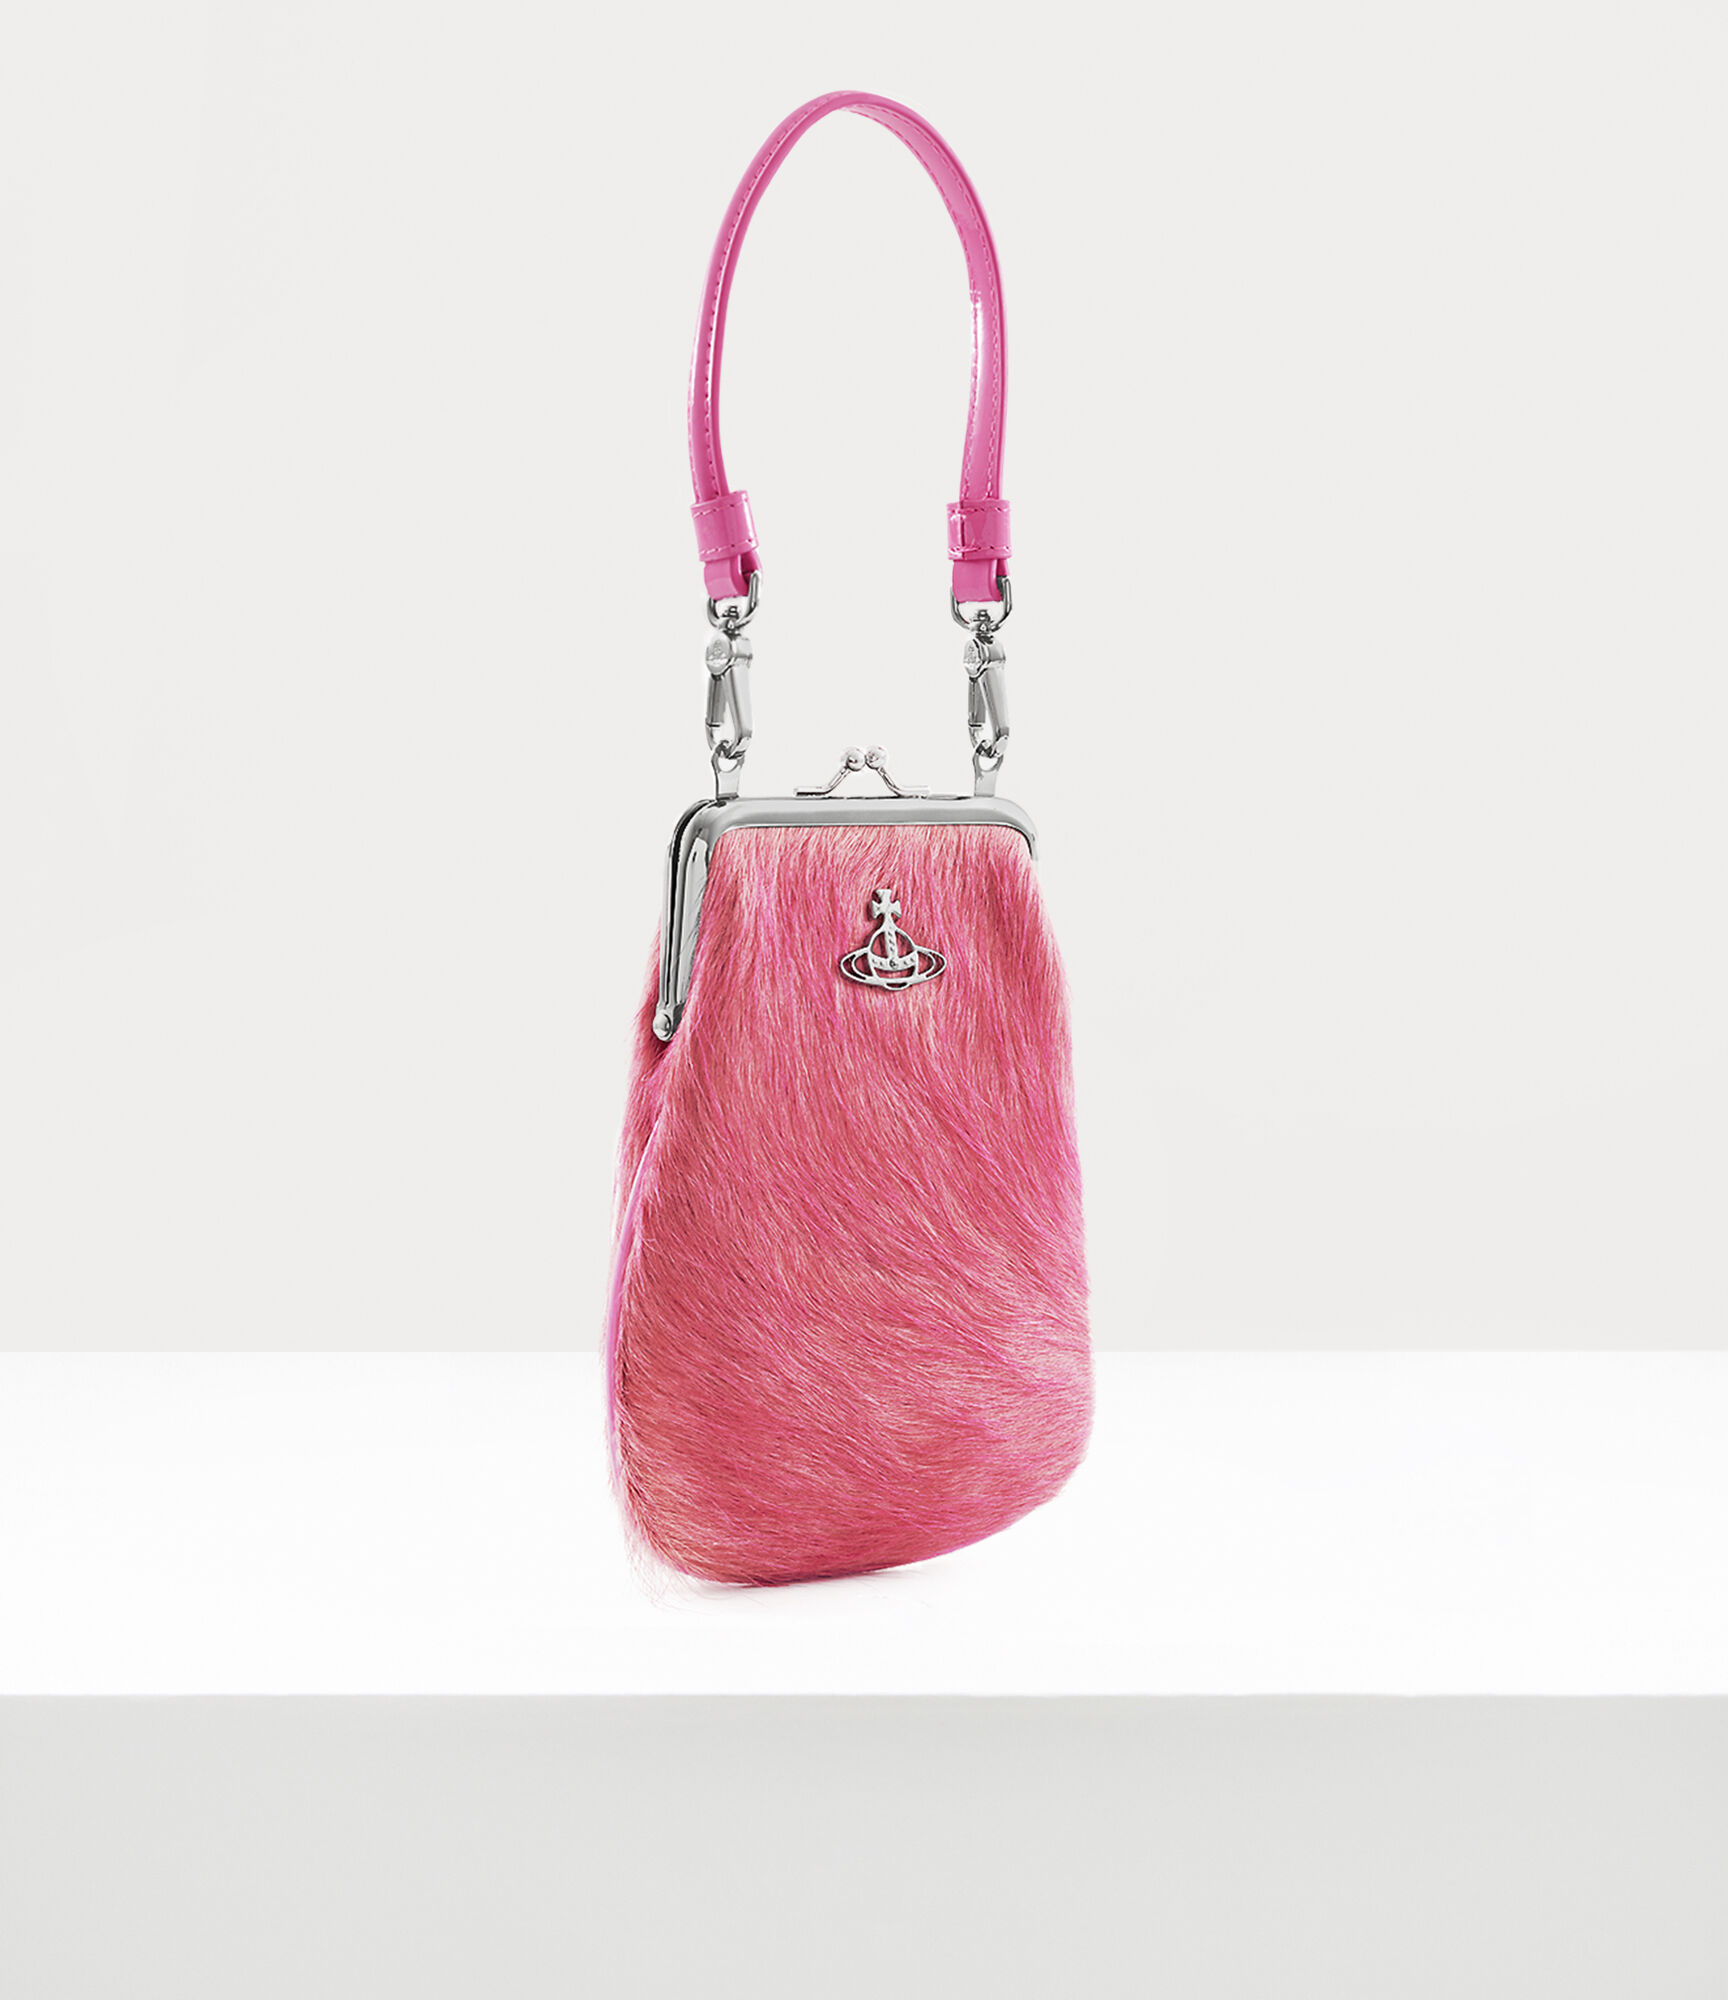 Large Pink Crossbody Purse Handbag Satchel Tote Shoulder Bag | eBay